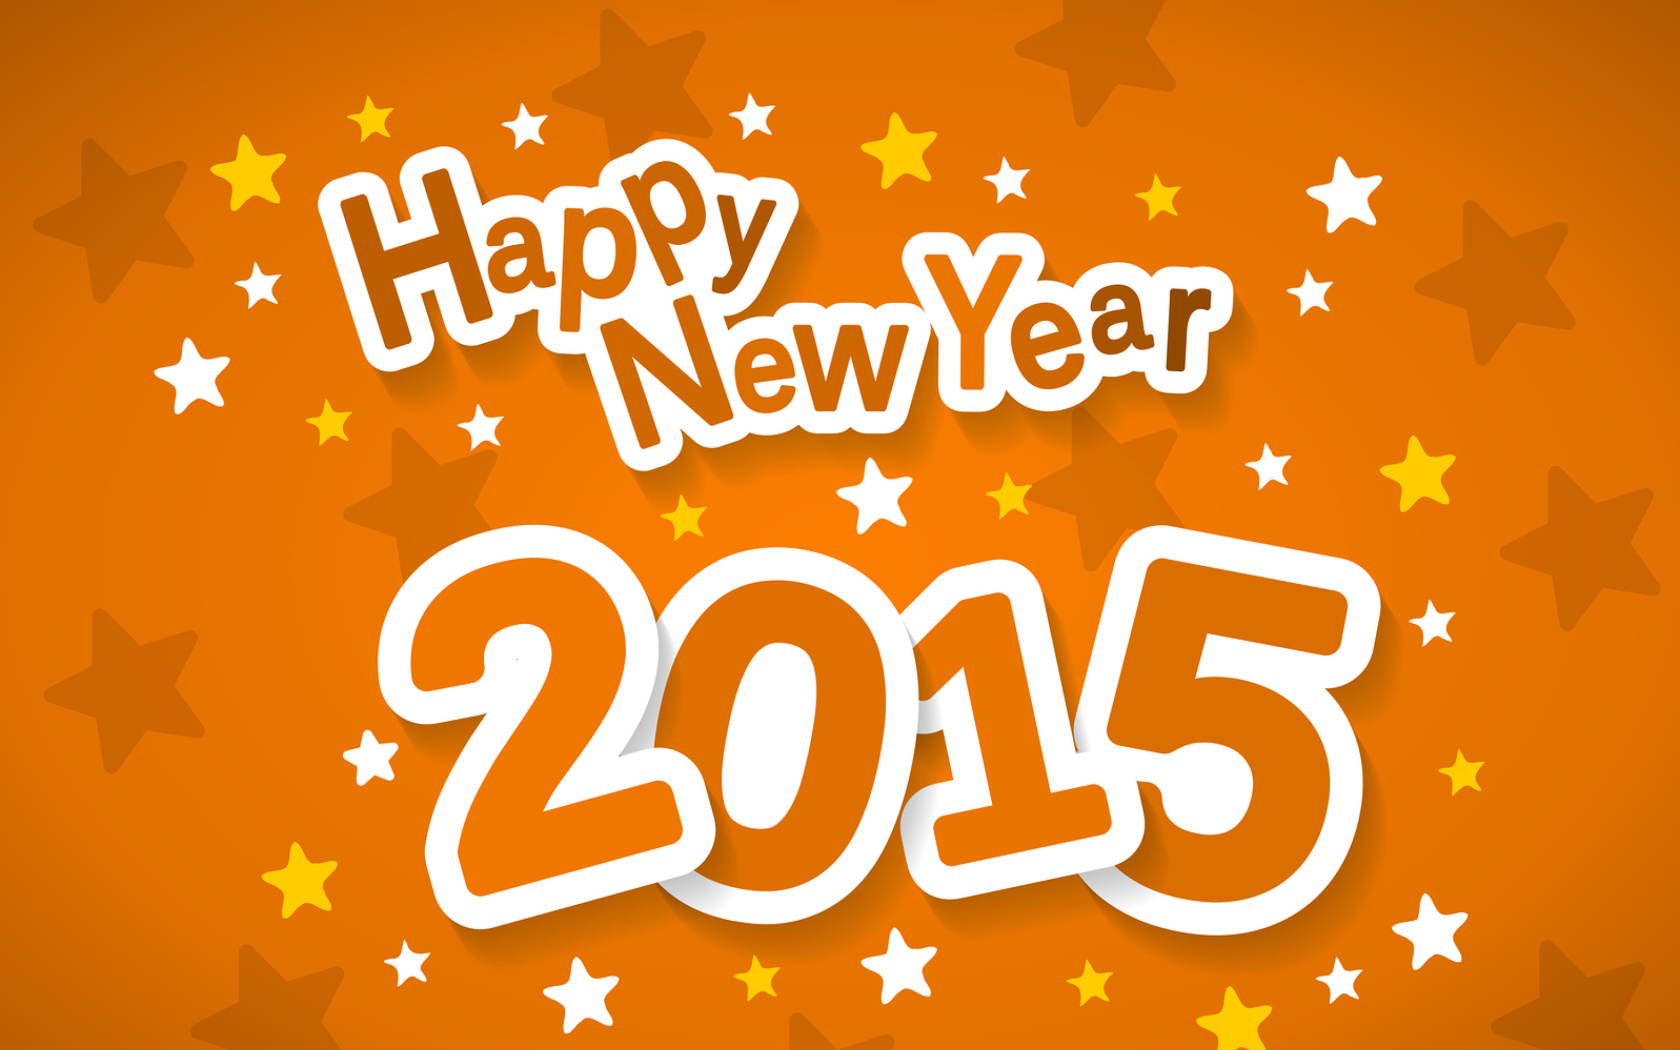 Happy New Year 2015 screenshot #1 1680x1050